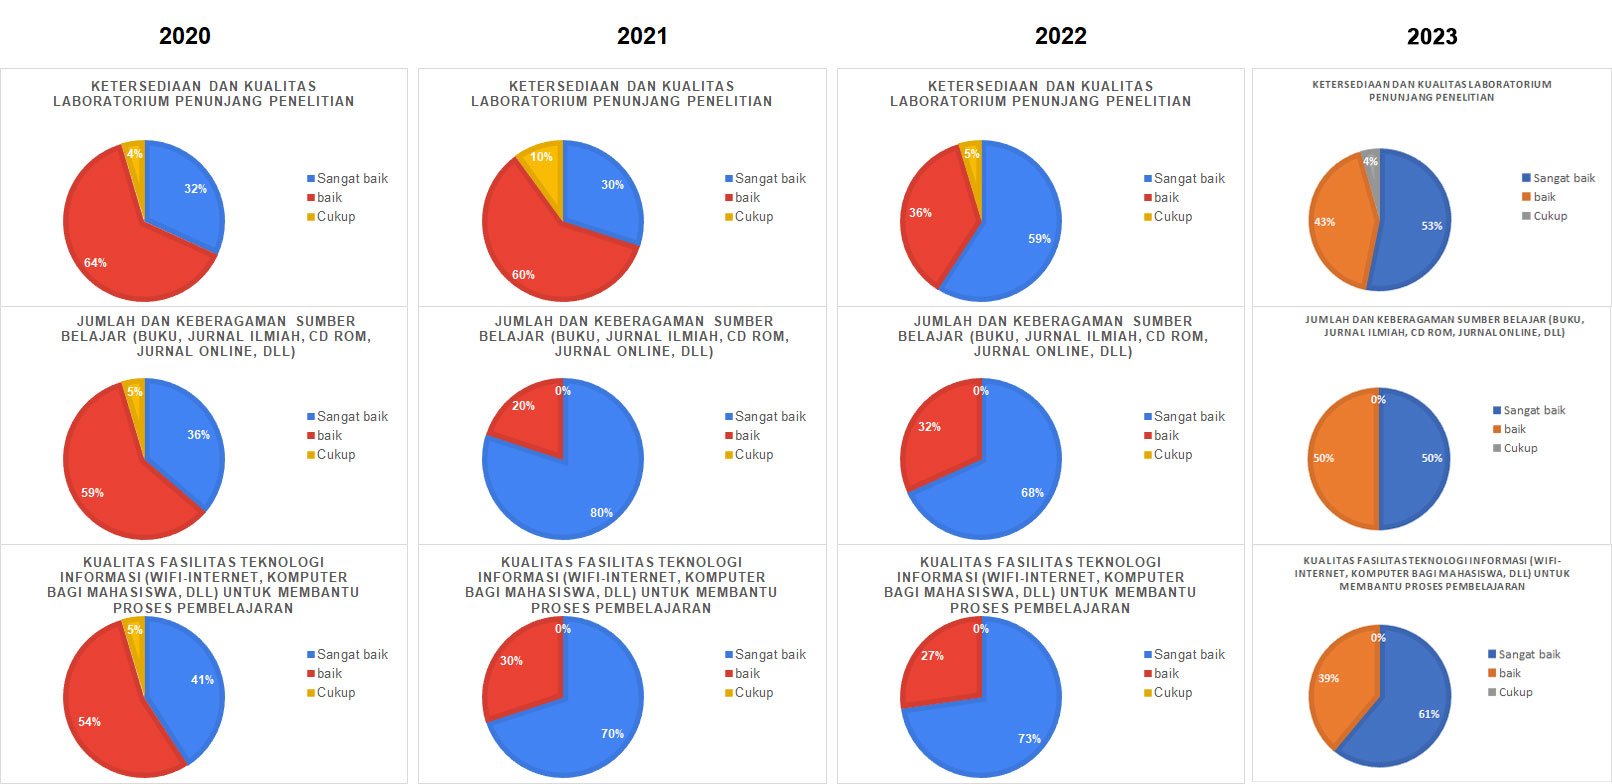 Hasil Survei Kepuasan Mahasiswa Terhadap Sarana dan Prasarana Prodi 2020-2023